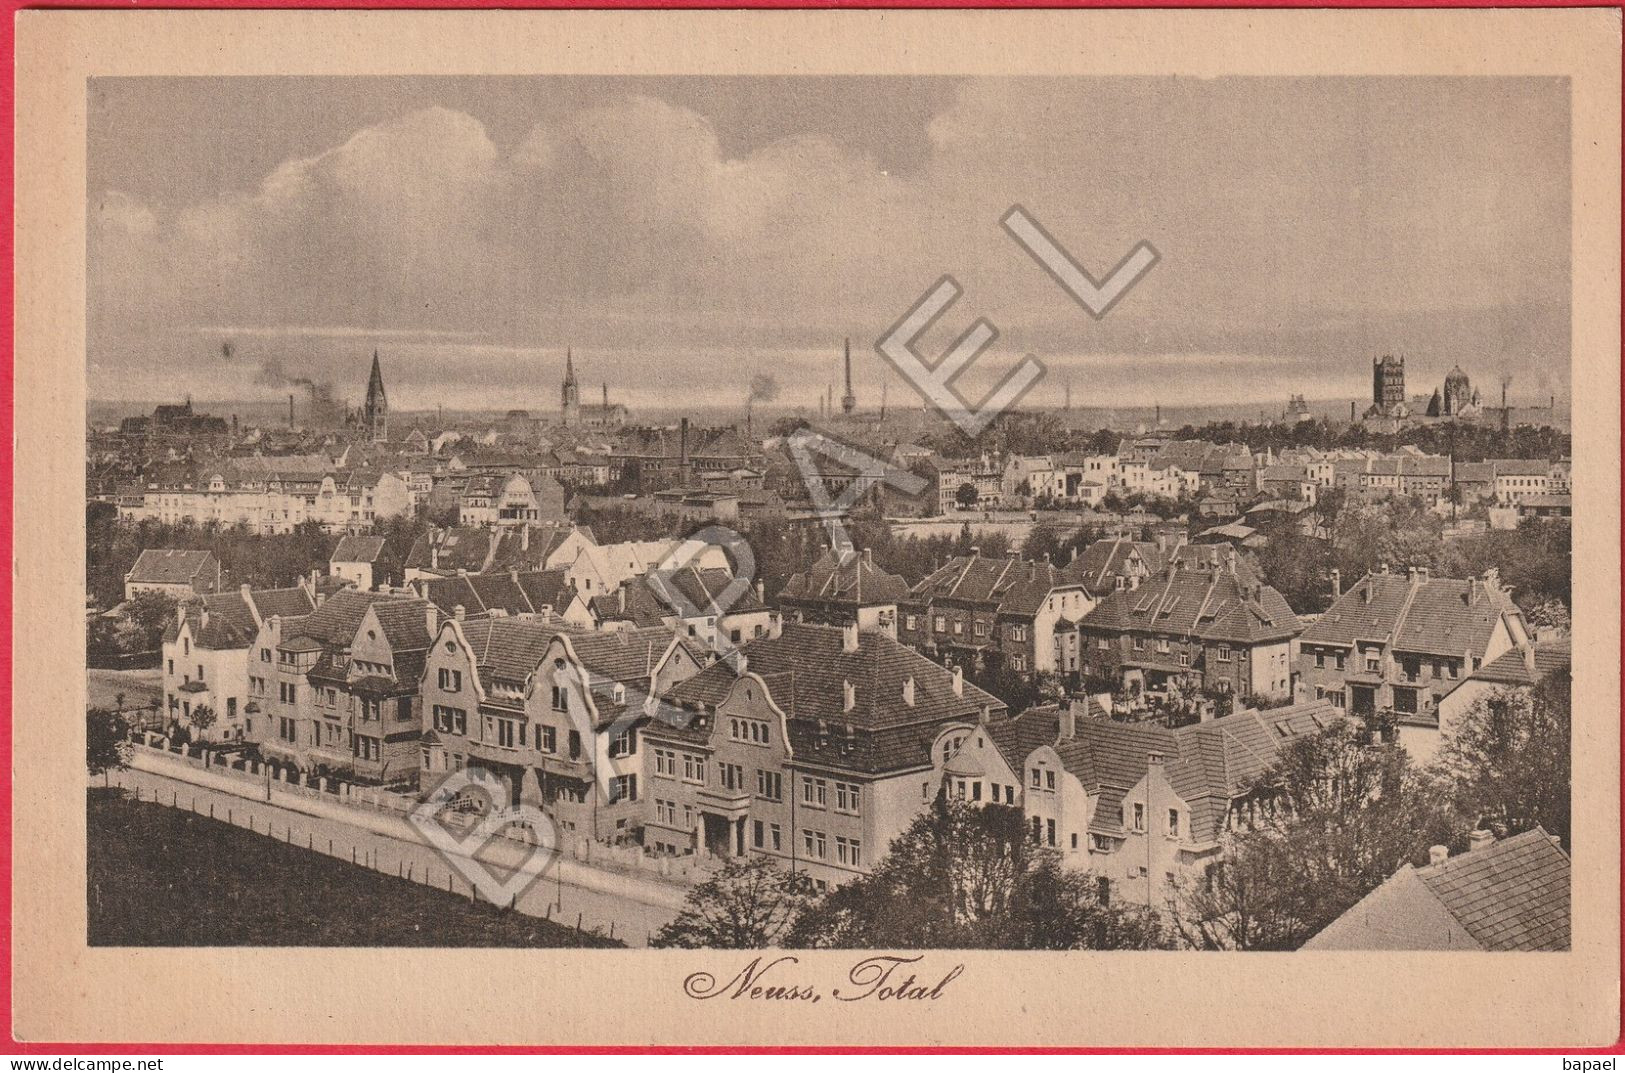 Neuss (Allemagne) - Vue Totale (Circulé En 1918) - Neuss